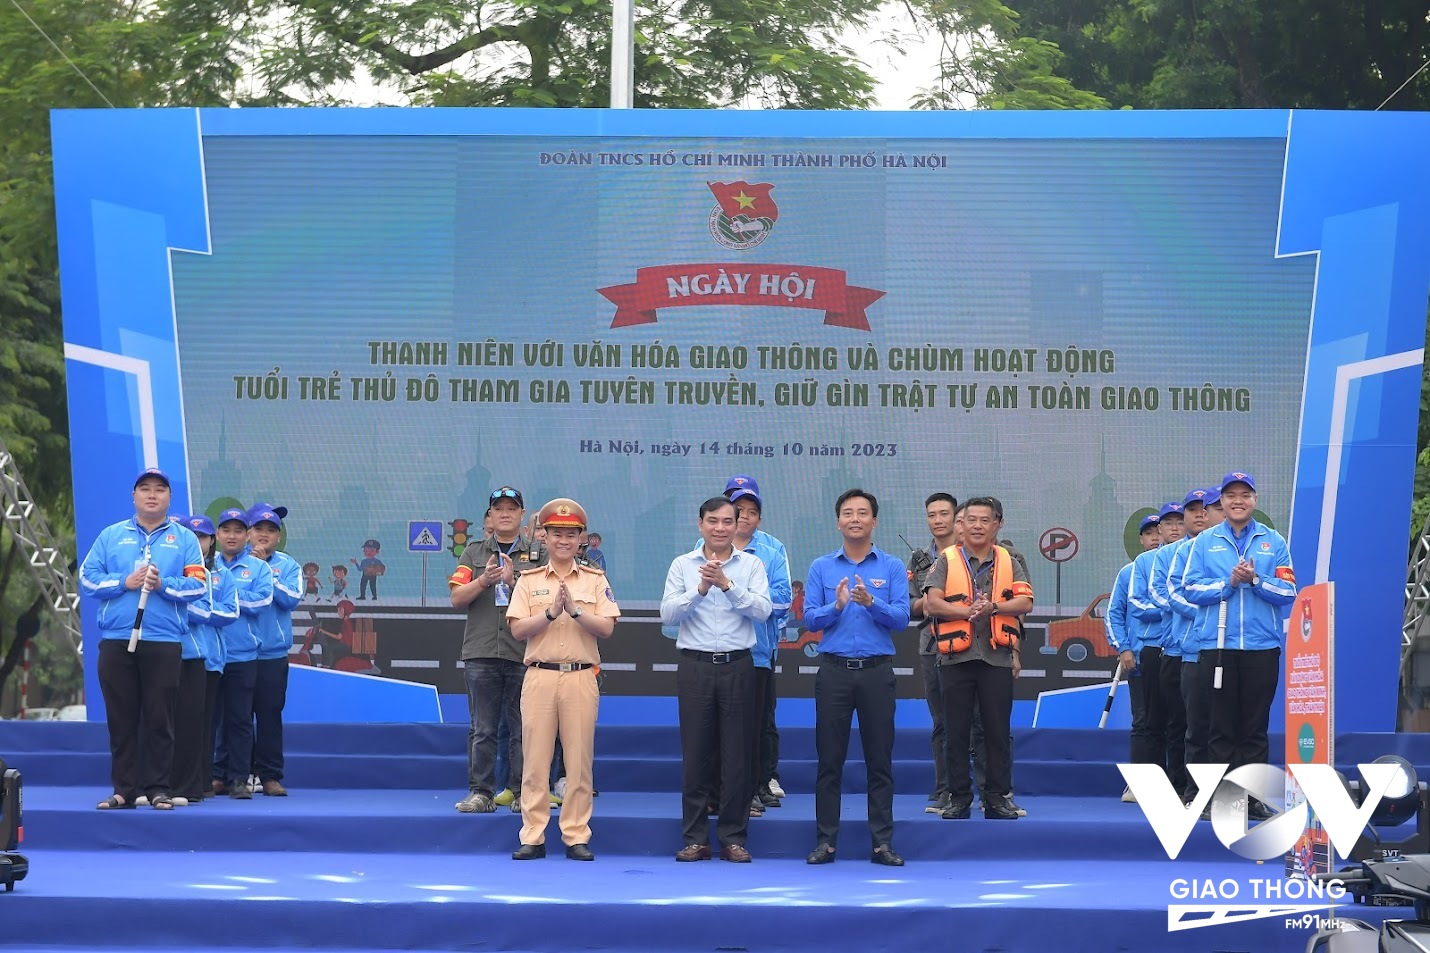 Thành đoàn – Hội Liên hiệp Thanh niên Thành phố Hà Nội đã ra mắt các đội Thanh niên tình nguyện tham gia đảm bảo trật tự an toàn giao thông, cứu hộ cứu nạn cấp thành phố